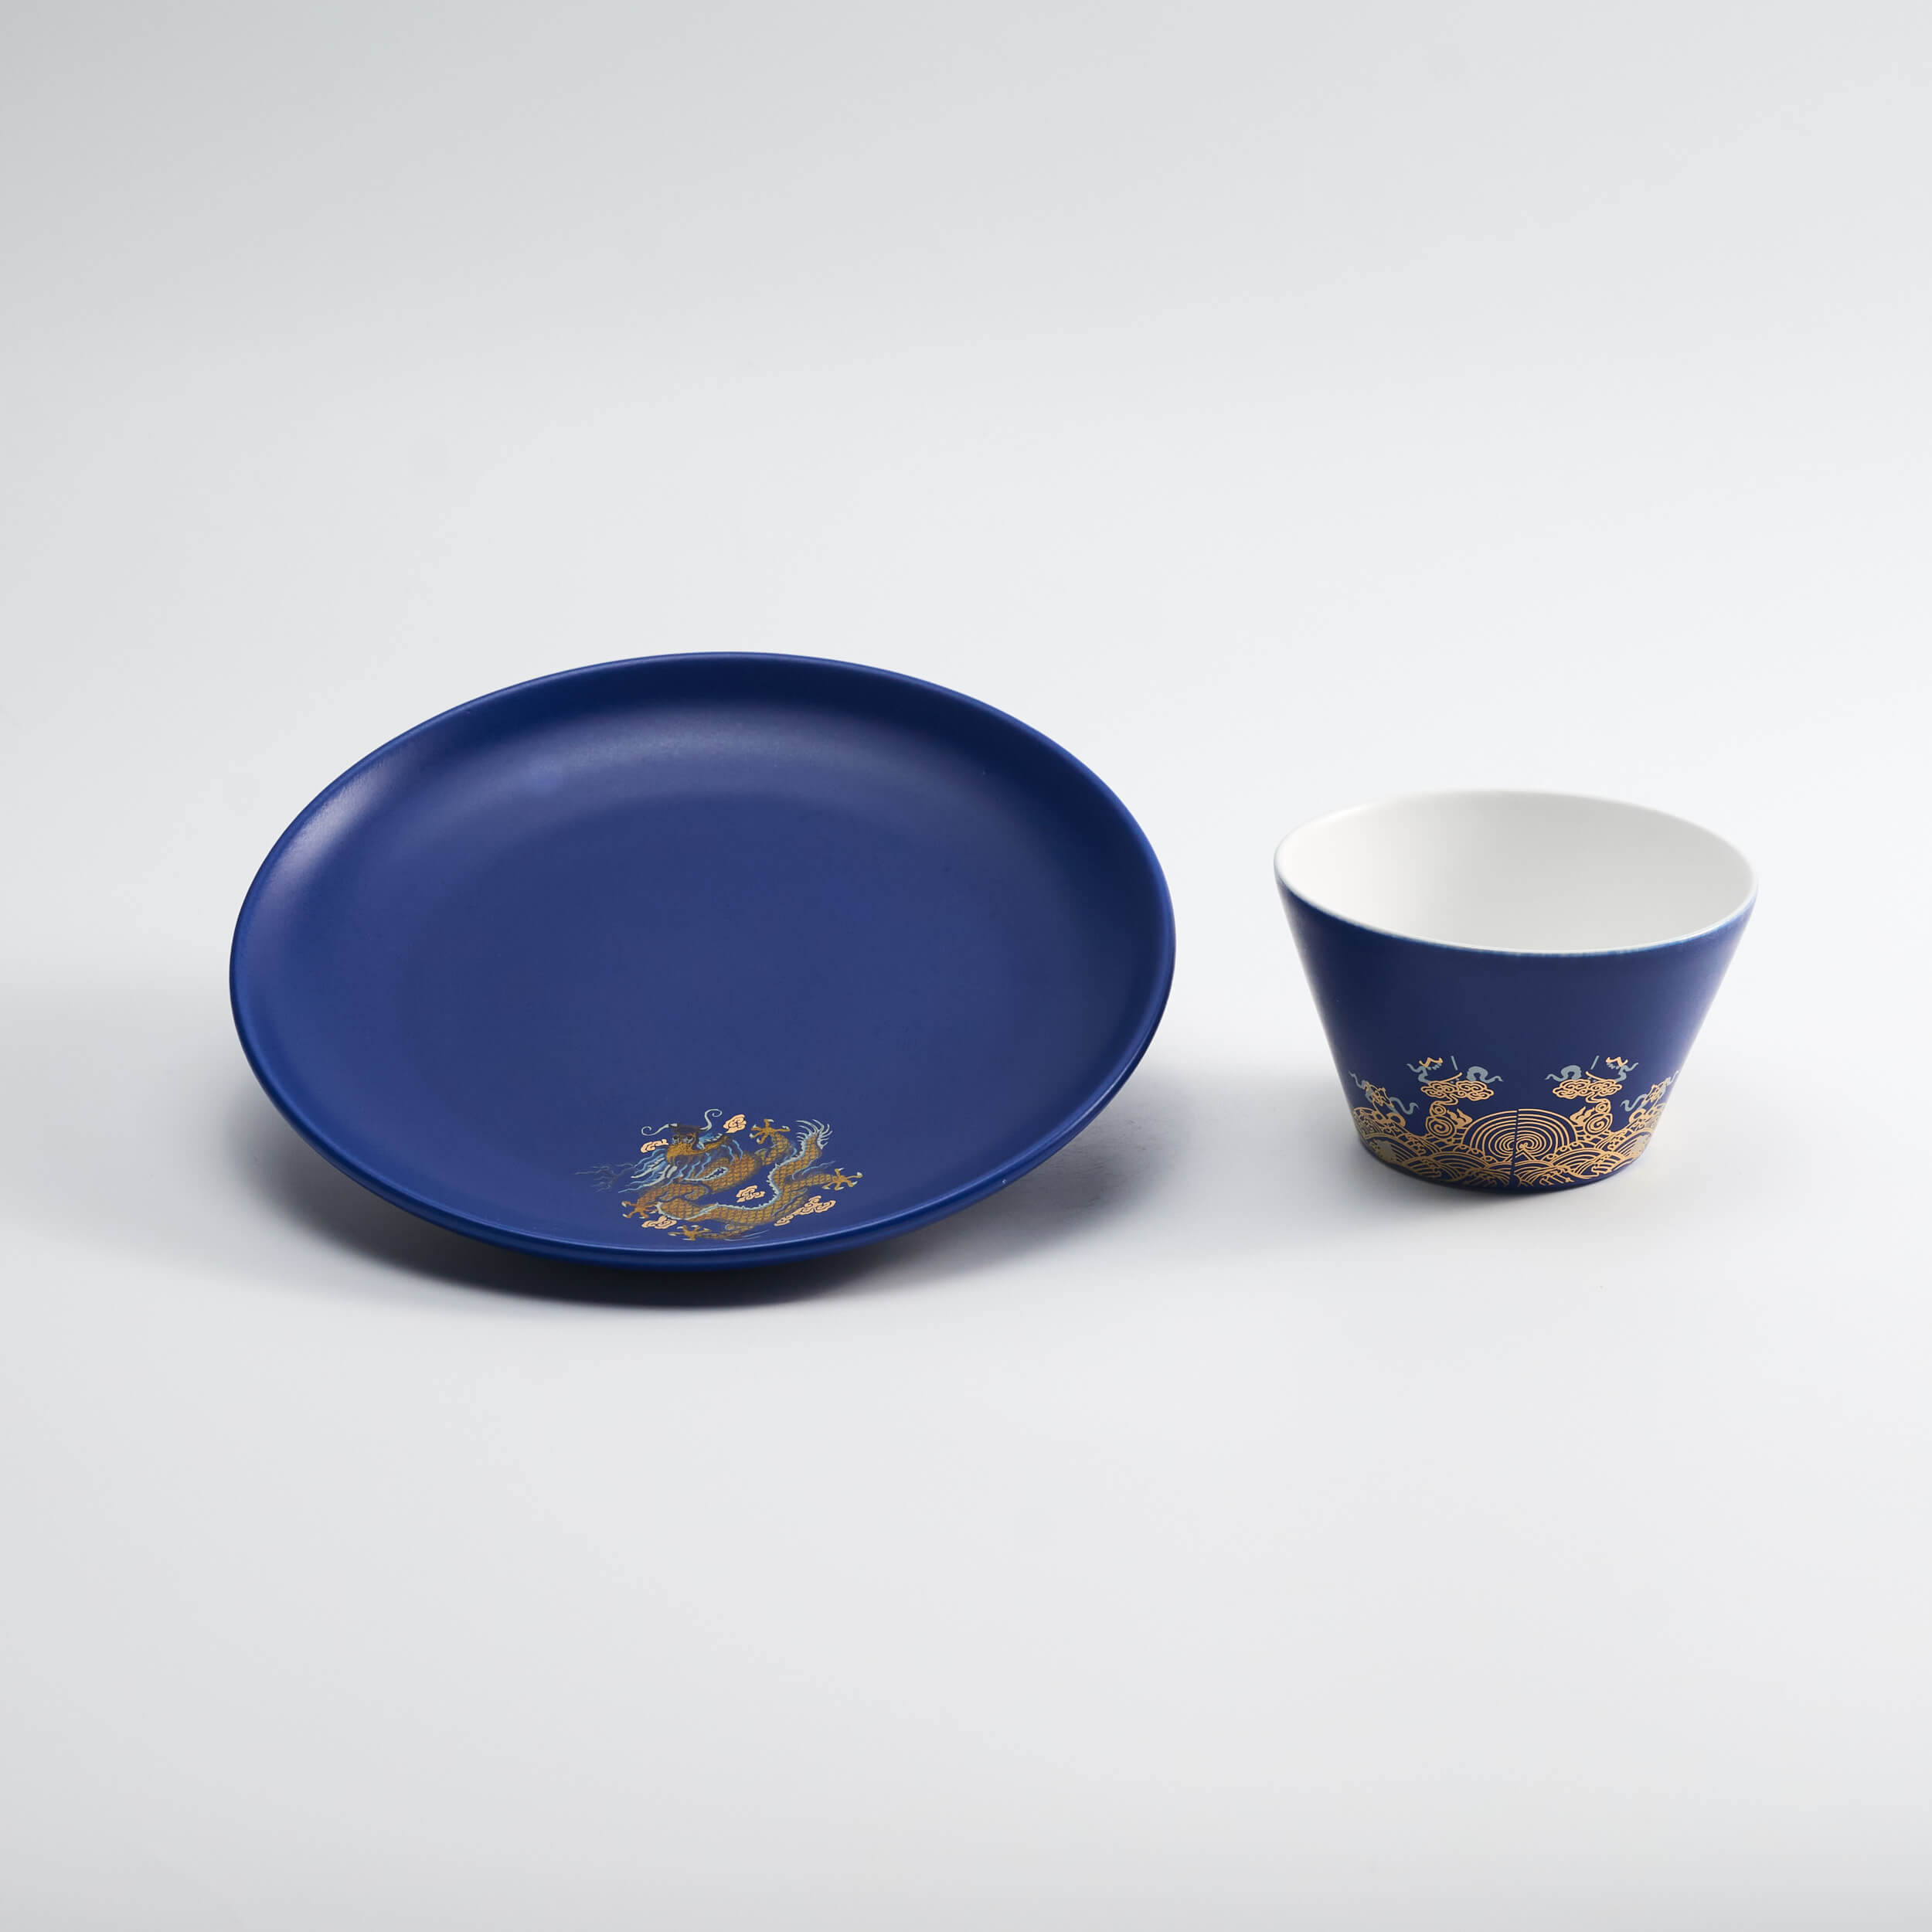 藍金龍袍碗盤組禮盒 Dragon Robe Tableware Set